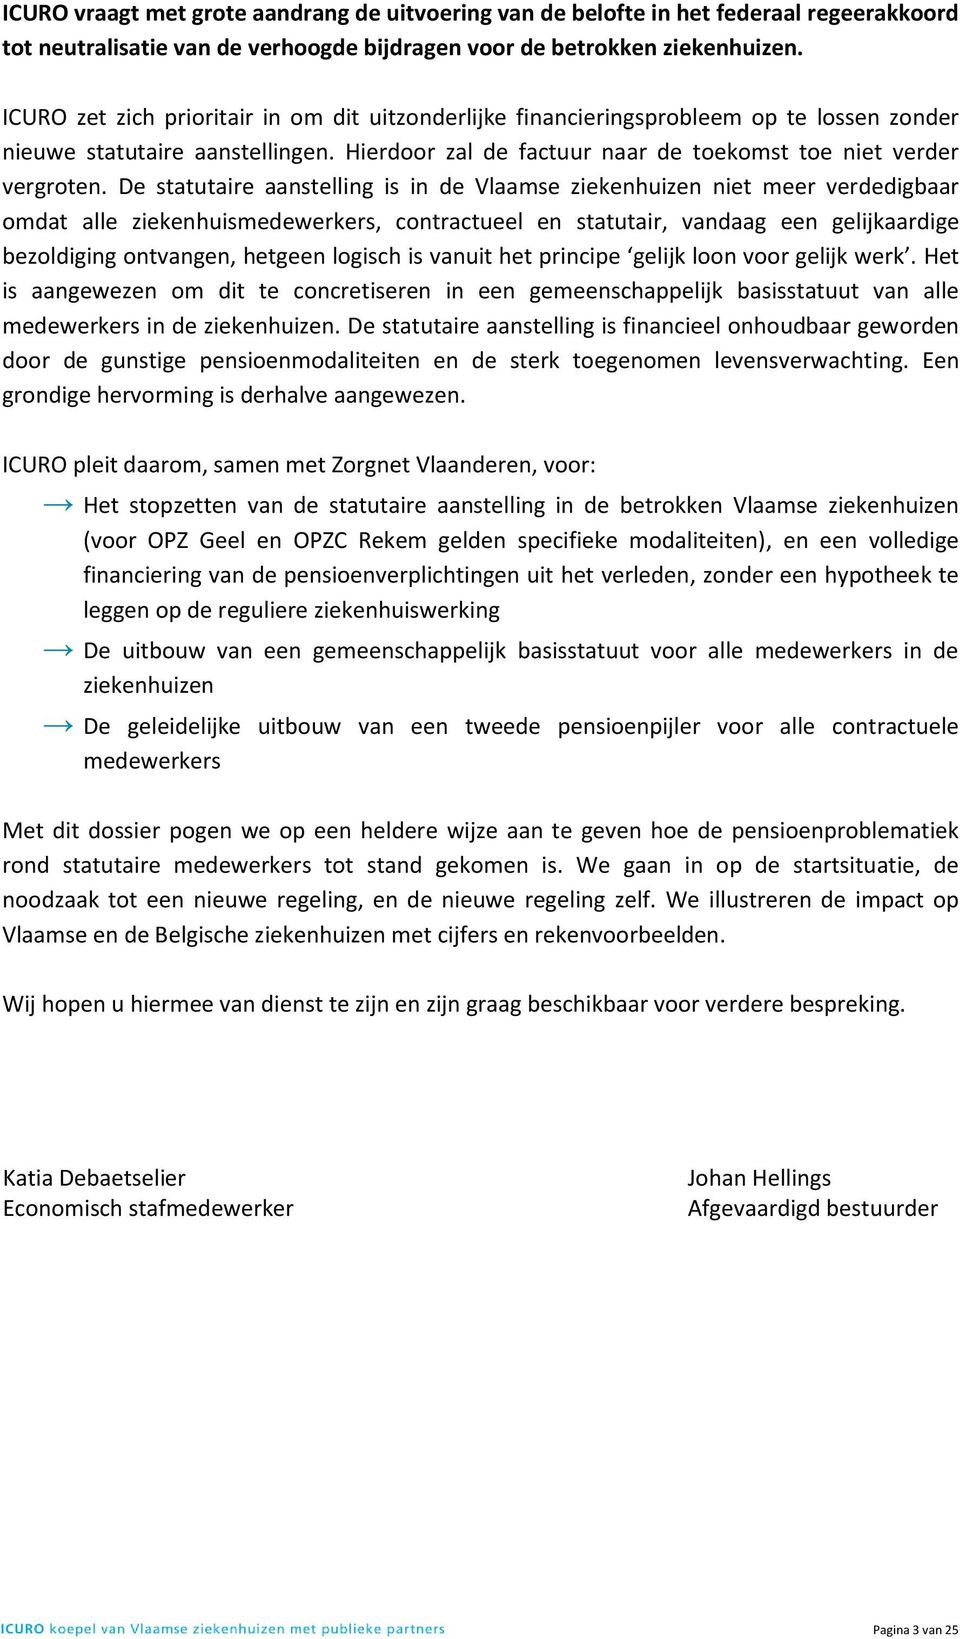 De statutaire aanstelling is in de Vlaamse ziekenhuizen niet meer verdedigbaar omdat alle ziekenhuismedewerkers, contractueel en statutair, vandaag een gelijkaardige bezoldiging ontvangen, hetgeen